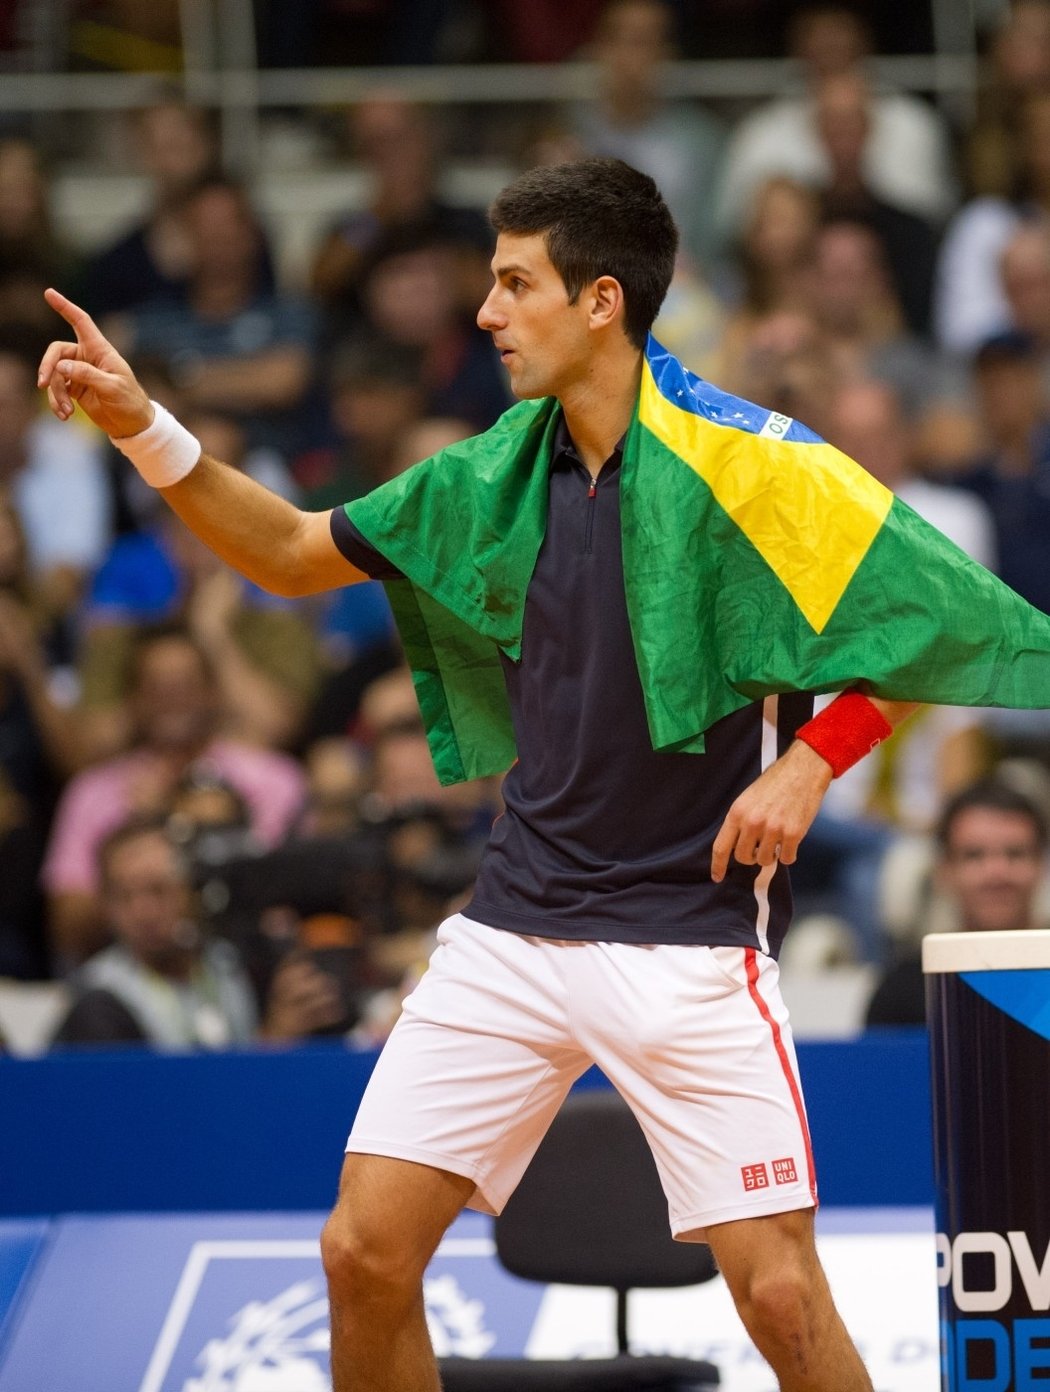 Že by změna občanství? Novak Djokovič s brazilskou vlajkou na exhibici v Rio de Janeiro